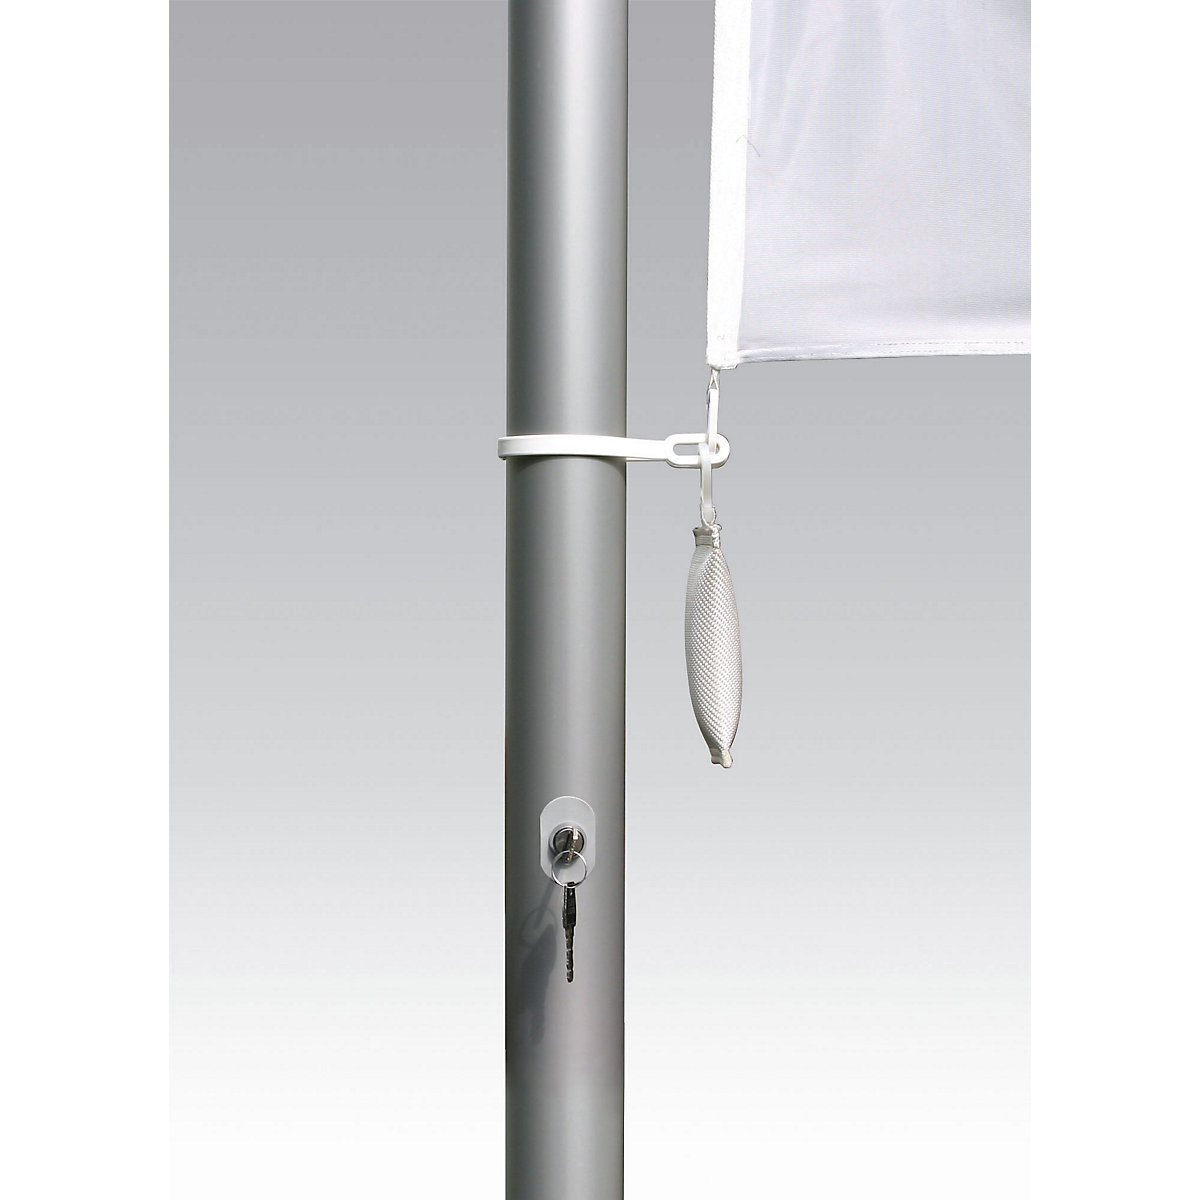 PIRAT aluminium flag pole – Mannus (Product illustration 3)-2